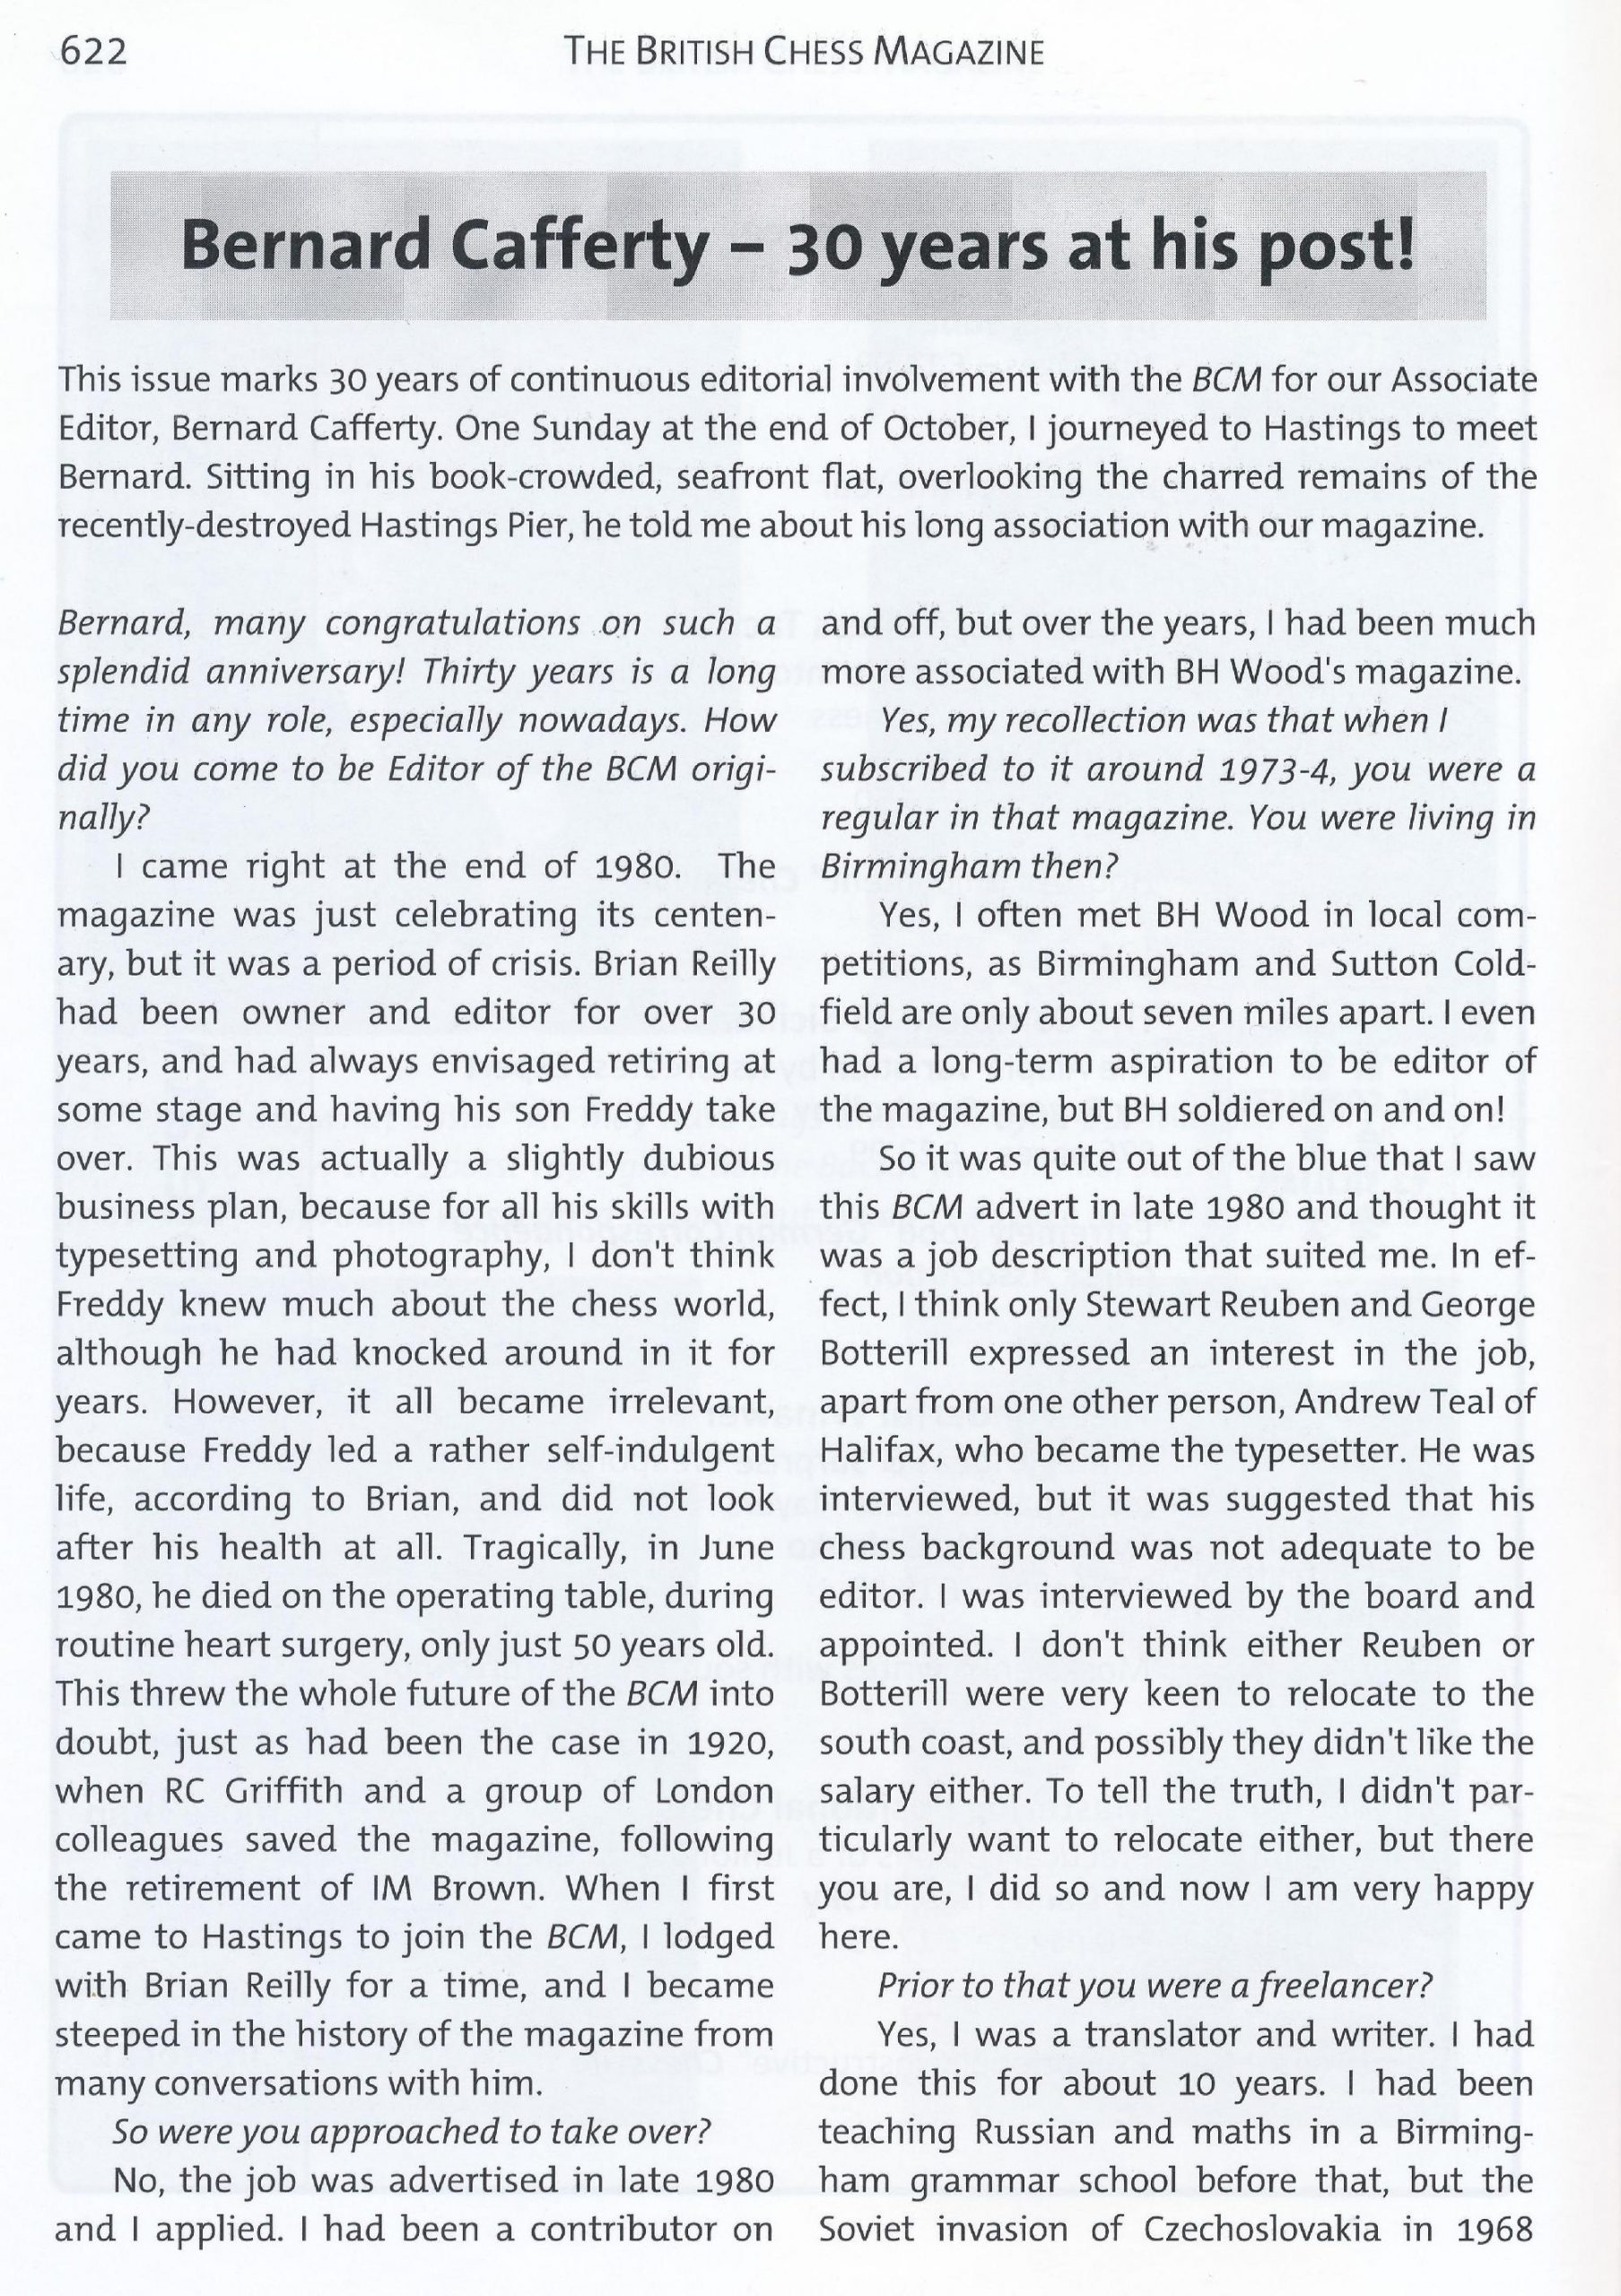 British Chess Magazine, Volume CXXX (103), Number 12, December, Page 622